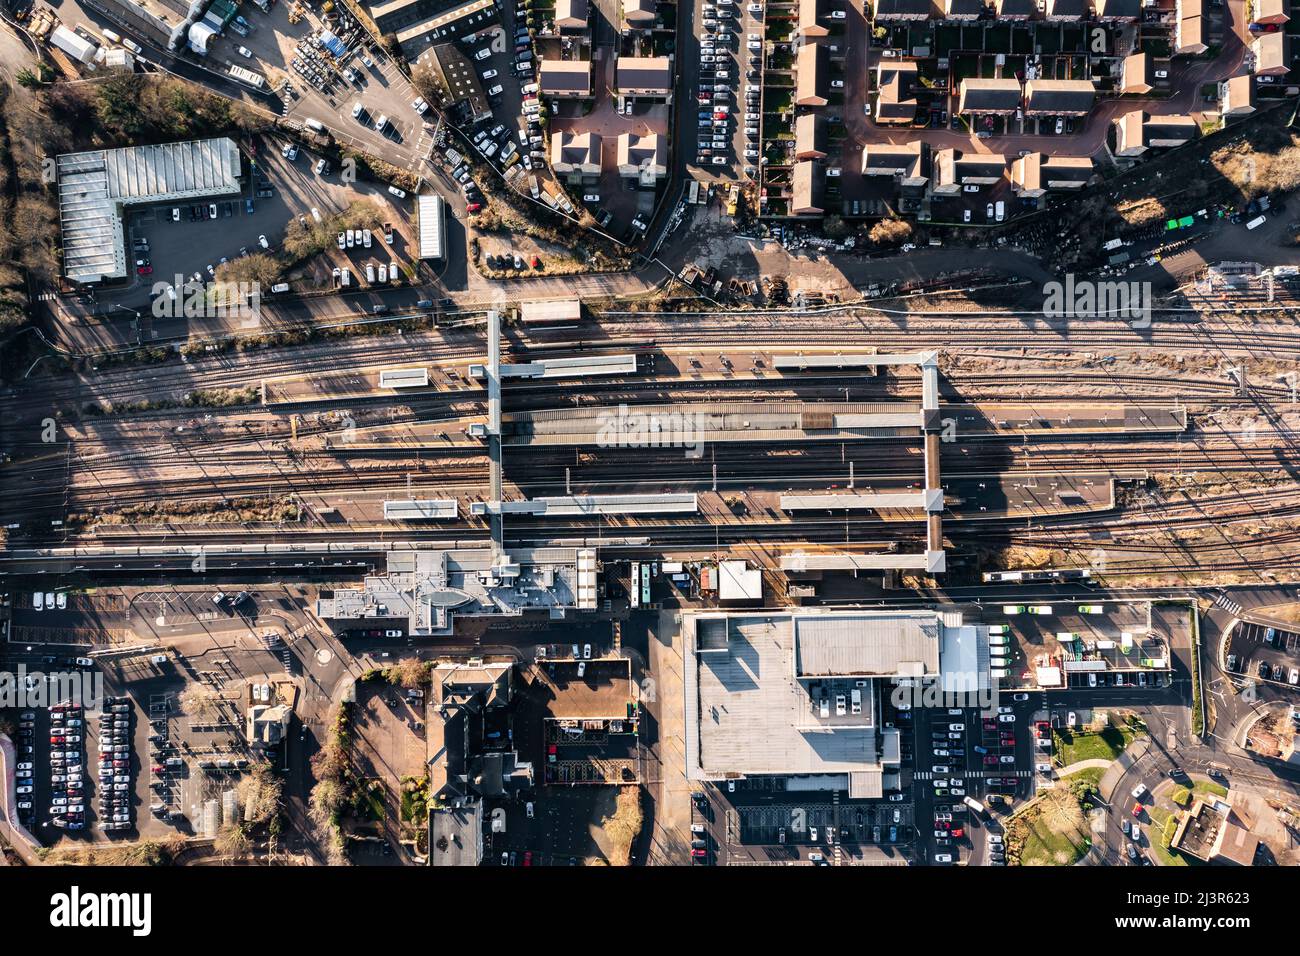 Vue aérienne de haut en bas des voies et plates-formes de la gare de Peterborough et de la ville environnante Banque D'Images